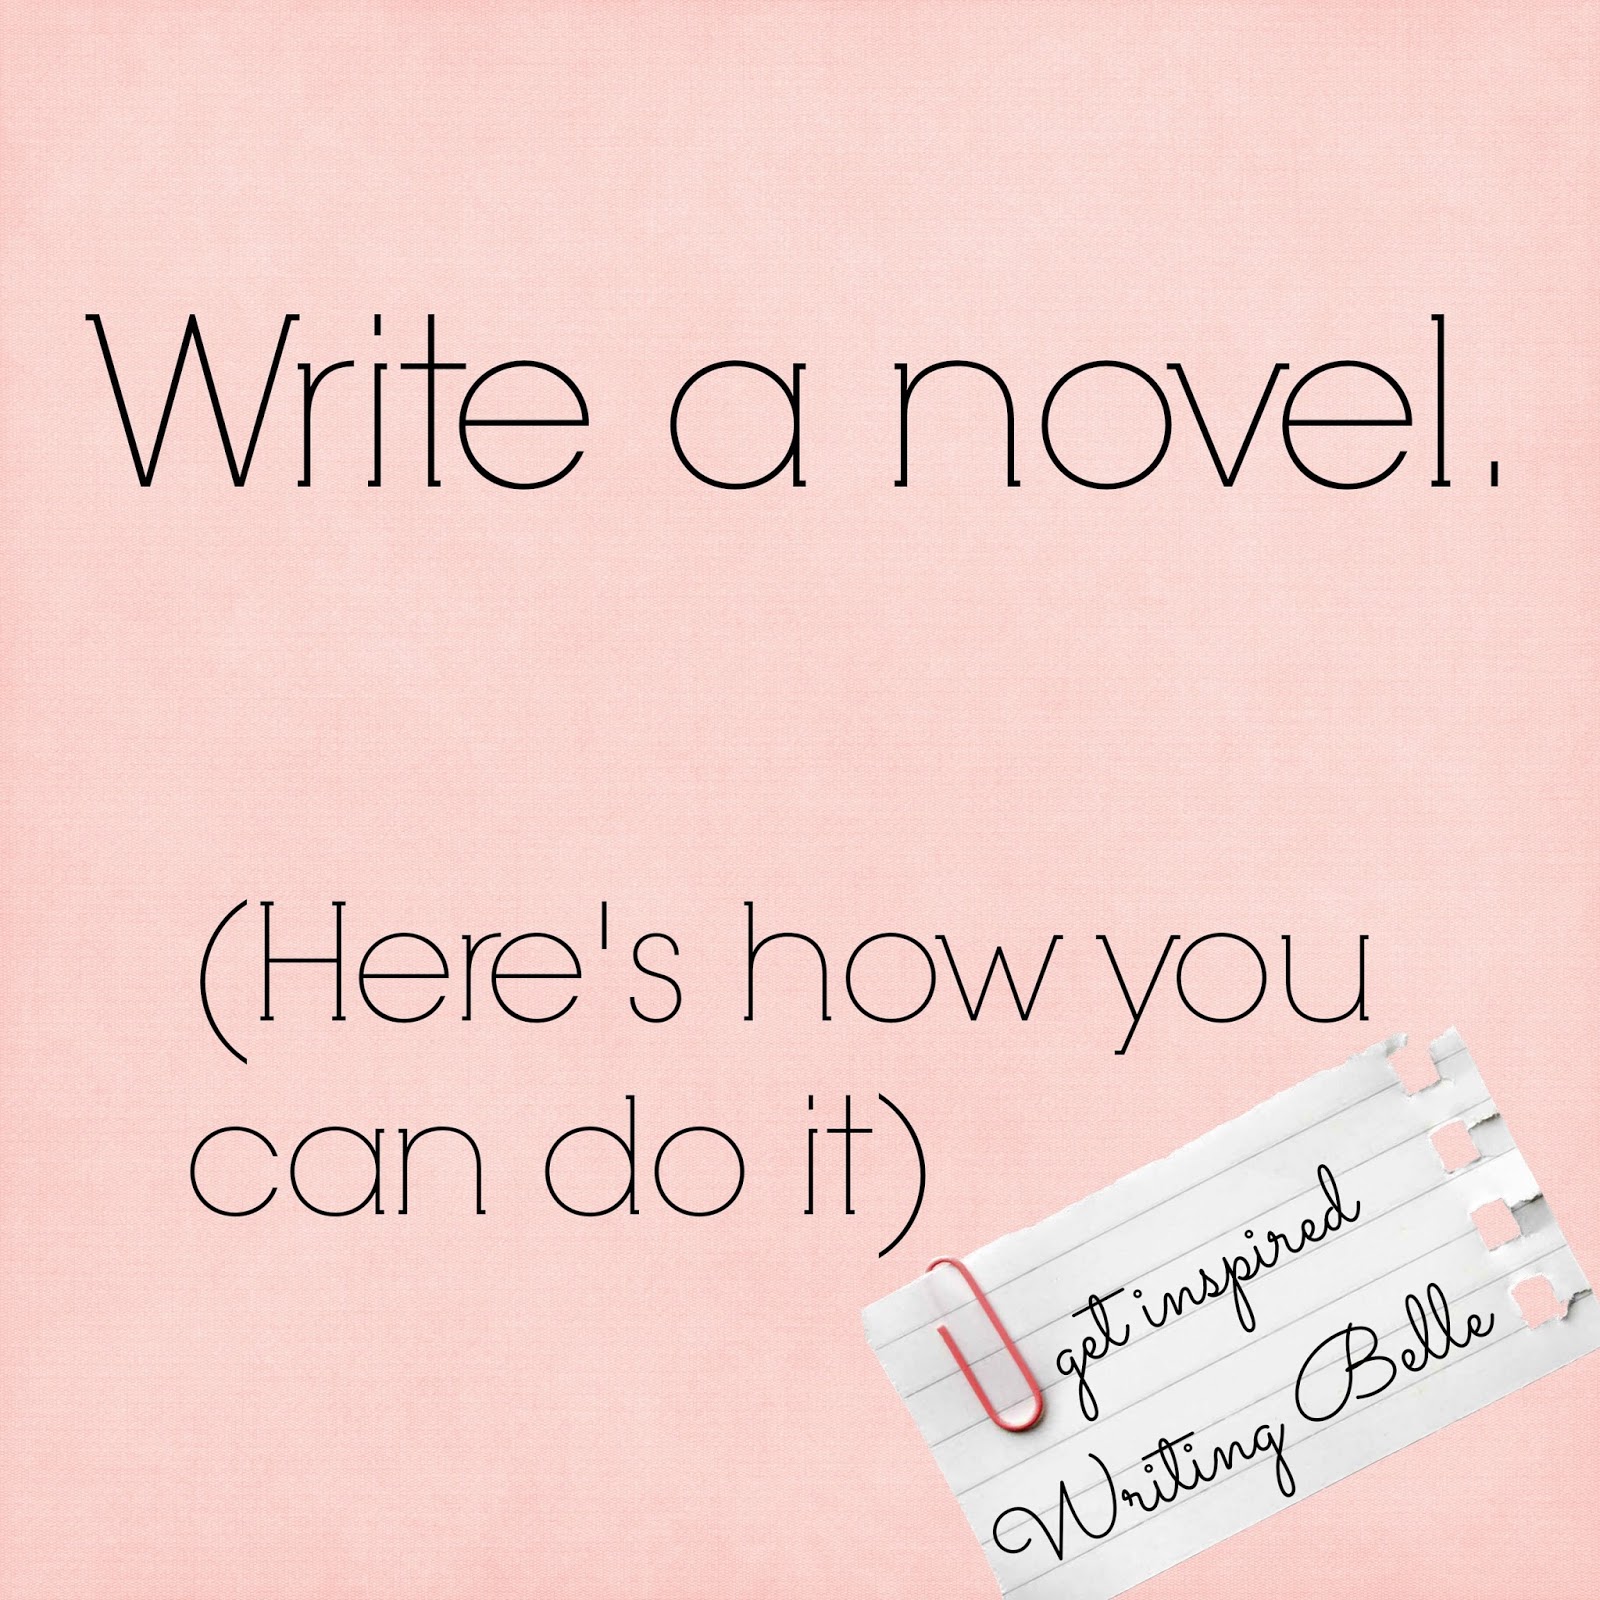 Ready to Write a Novel?